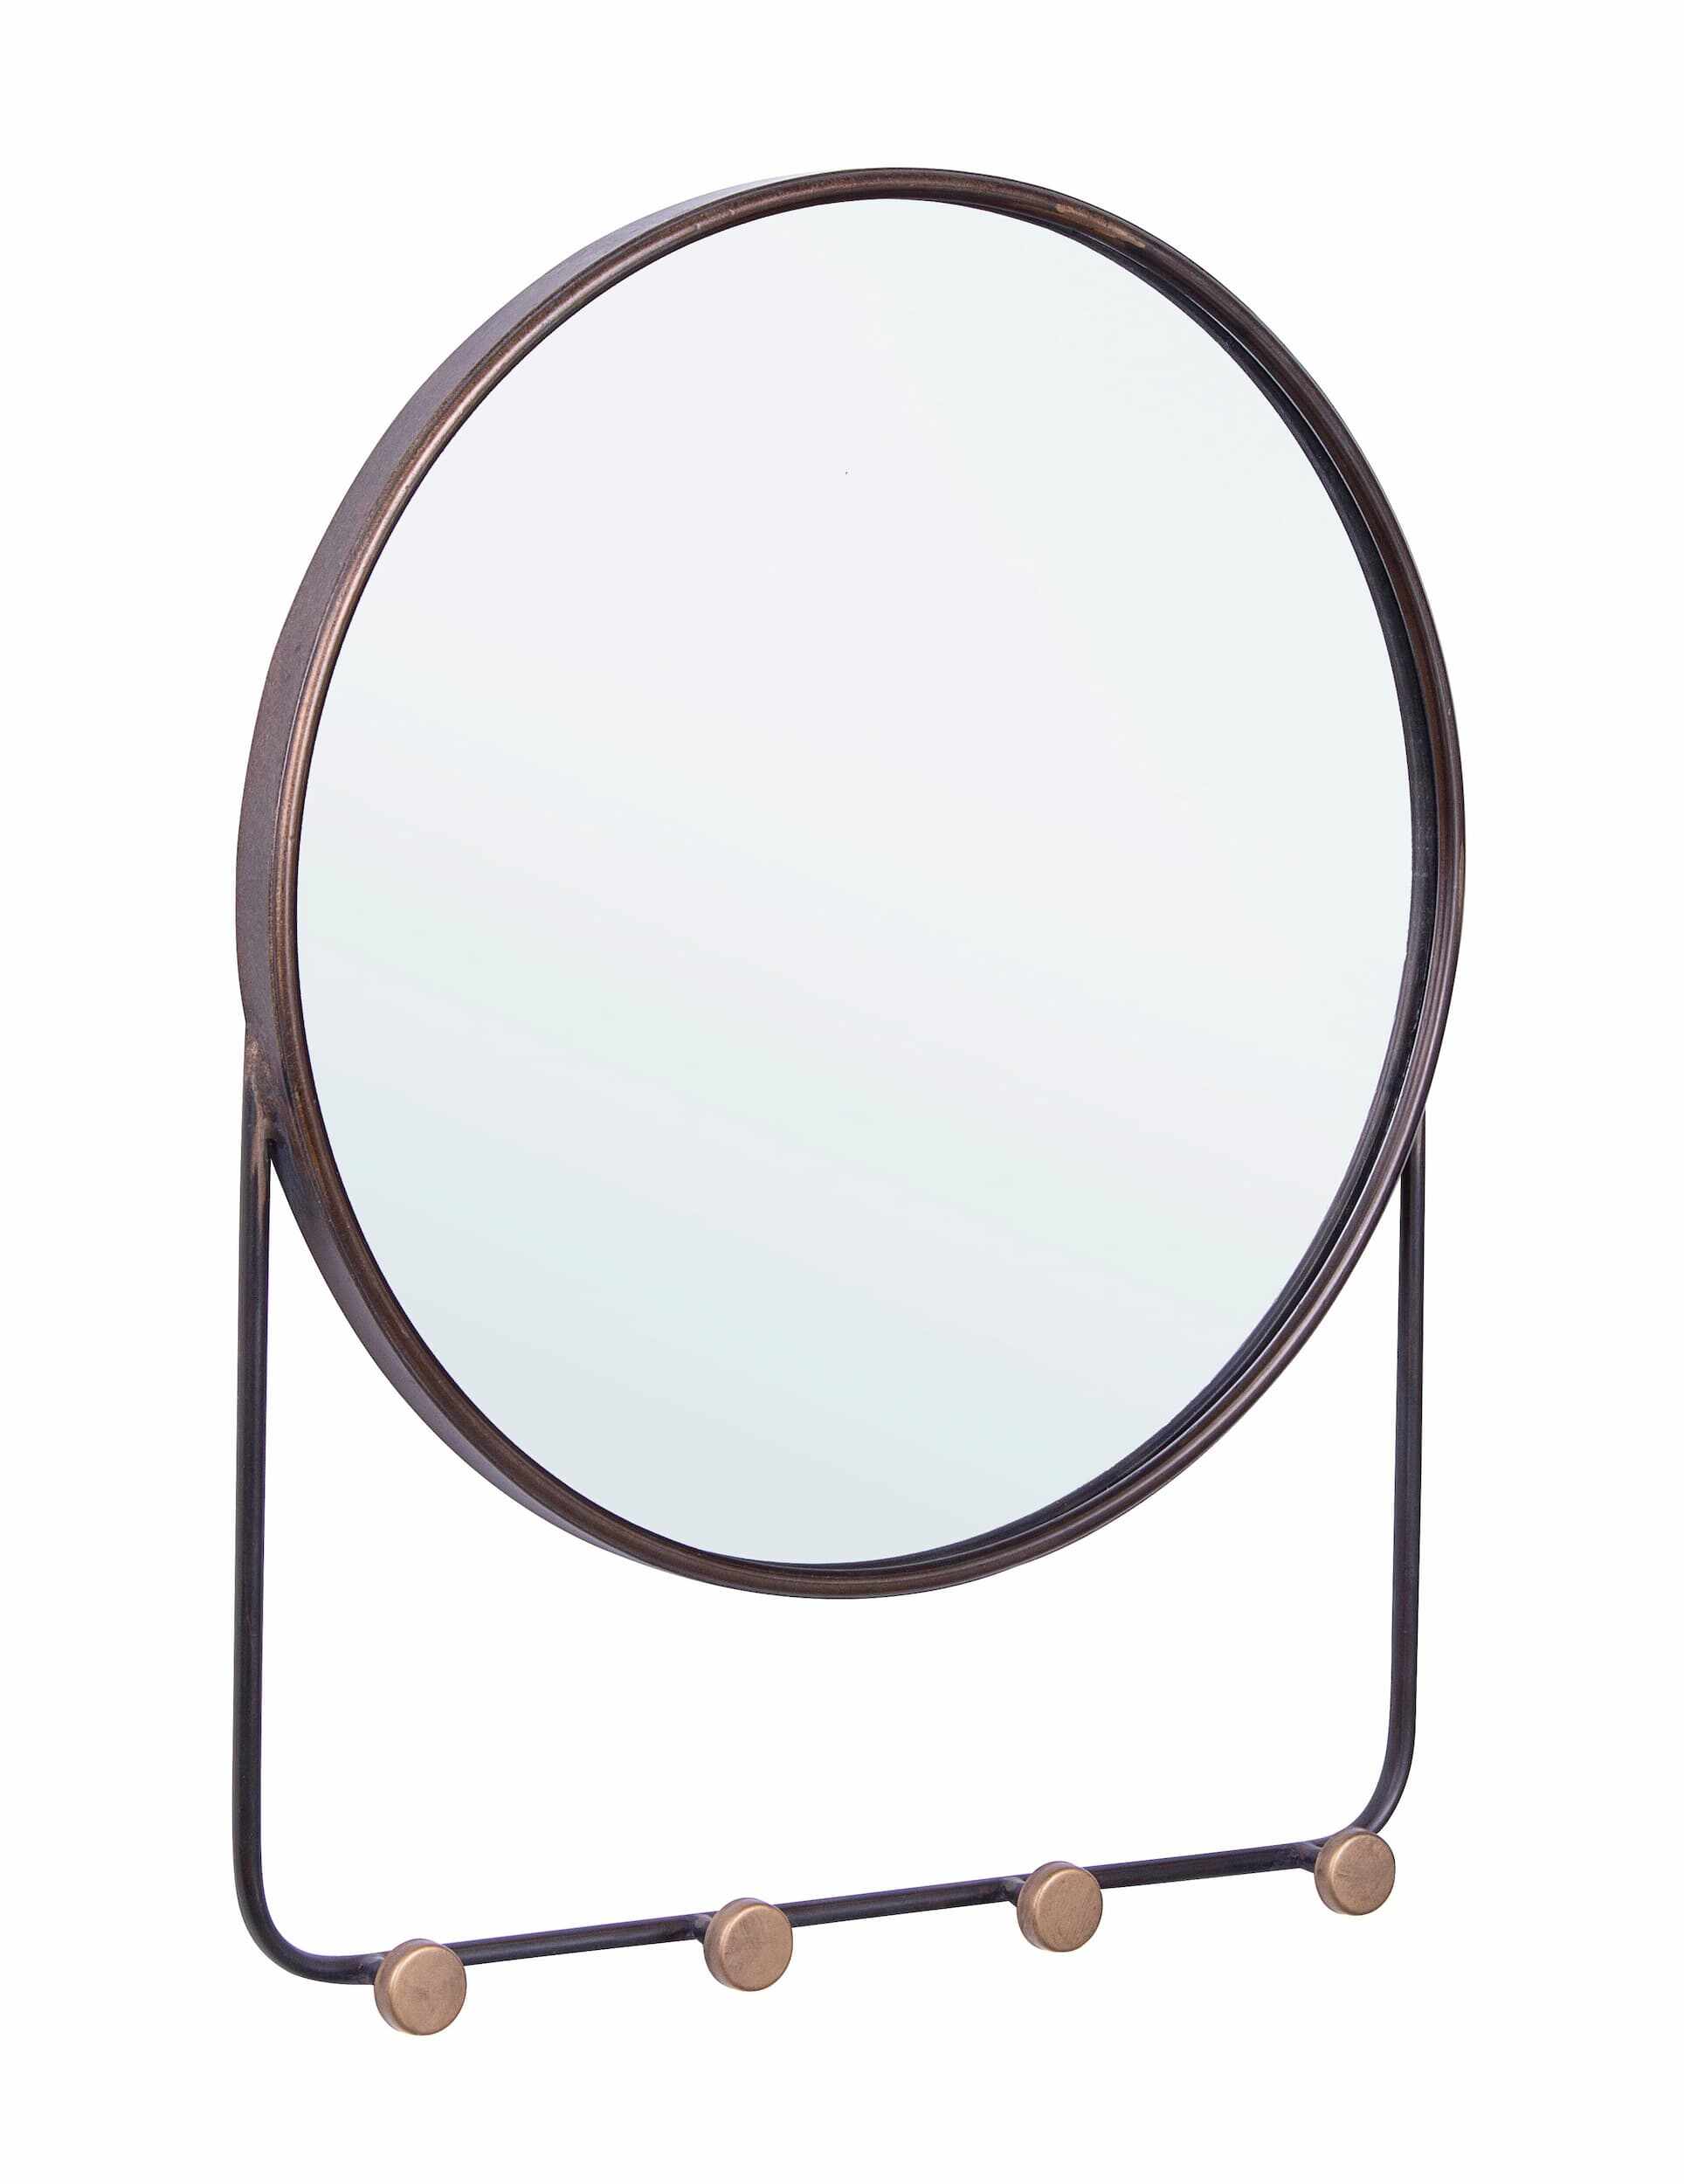 Oglinda decorativa cu rama metalica si cuier, Contours 4H Maro Antichizat, l50xH63 cm